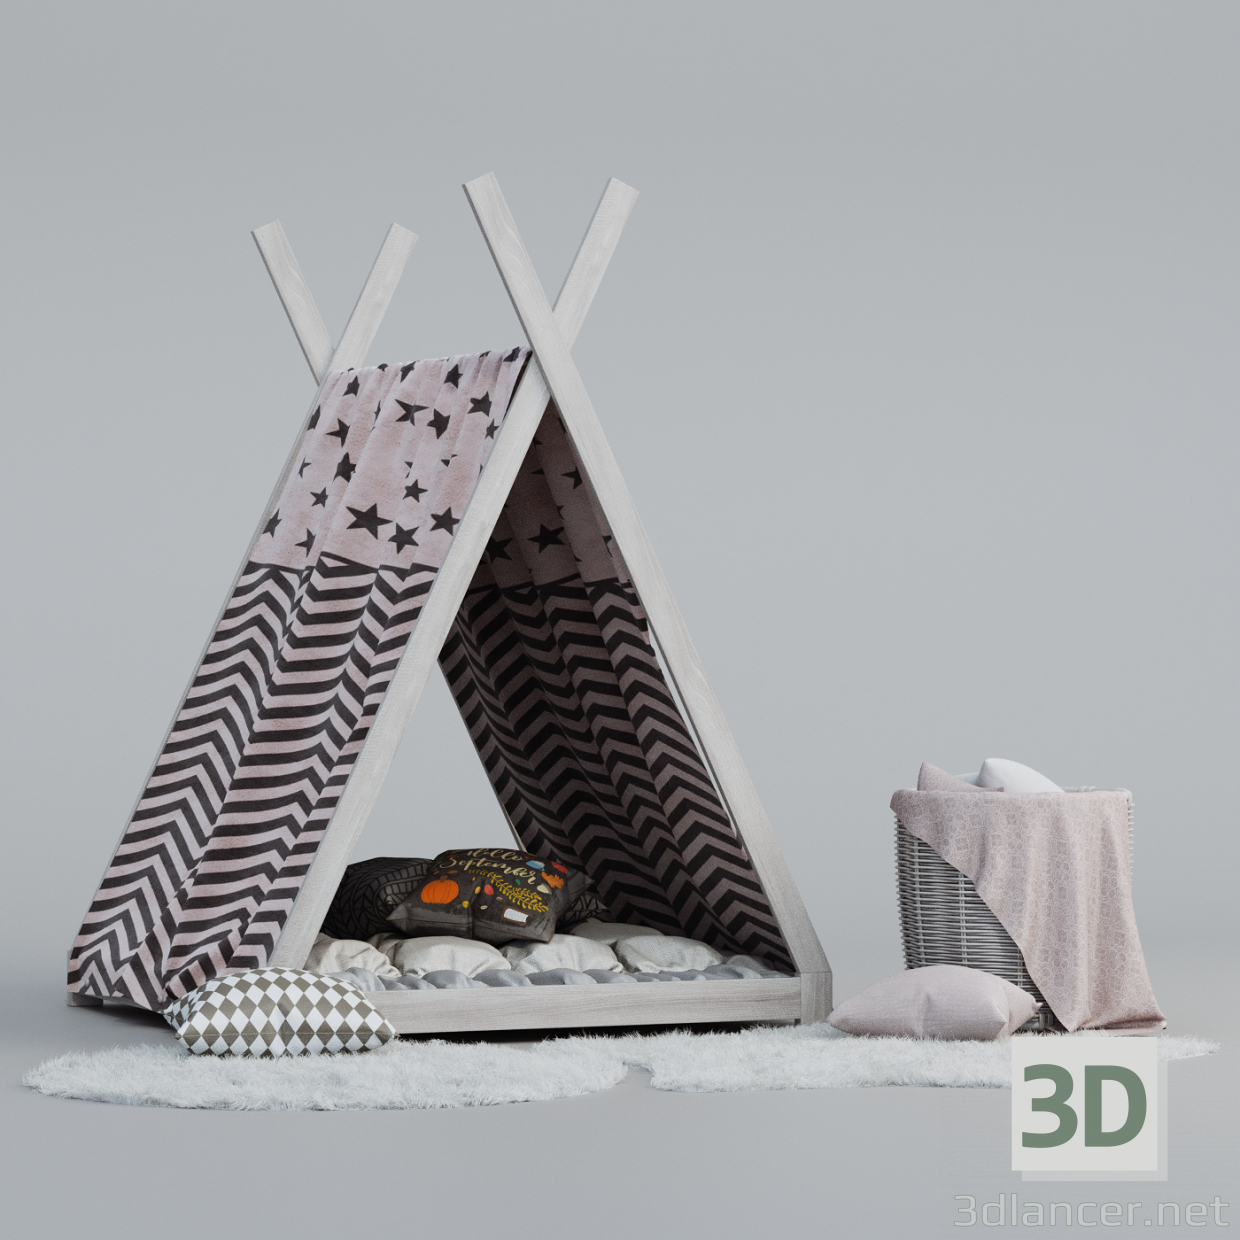 3D Çocuk Wigwam ve Dekor Seti modeli satın - render